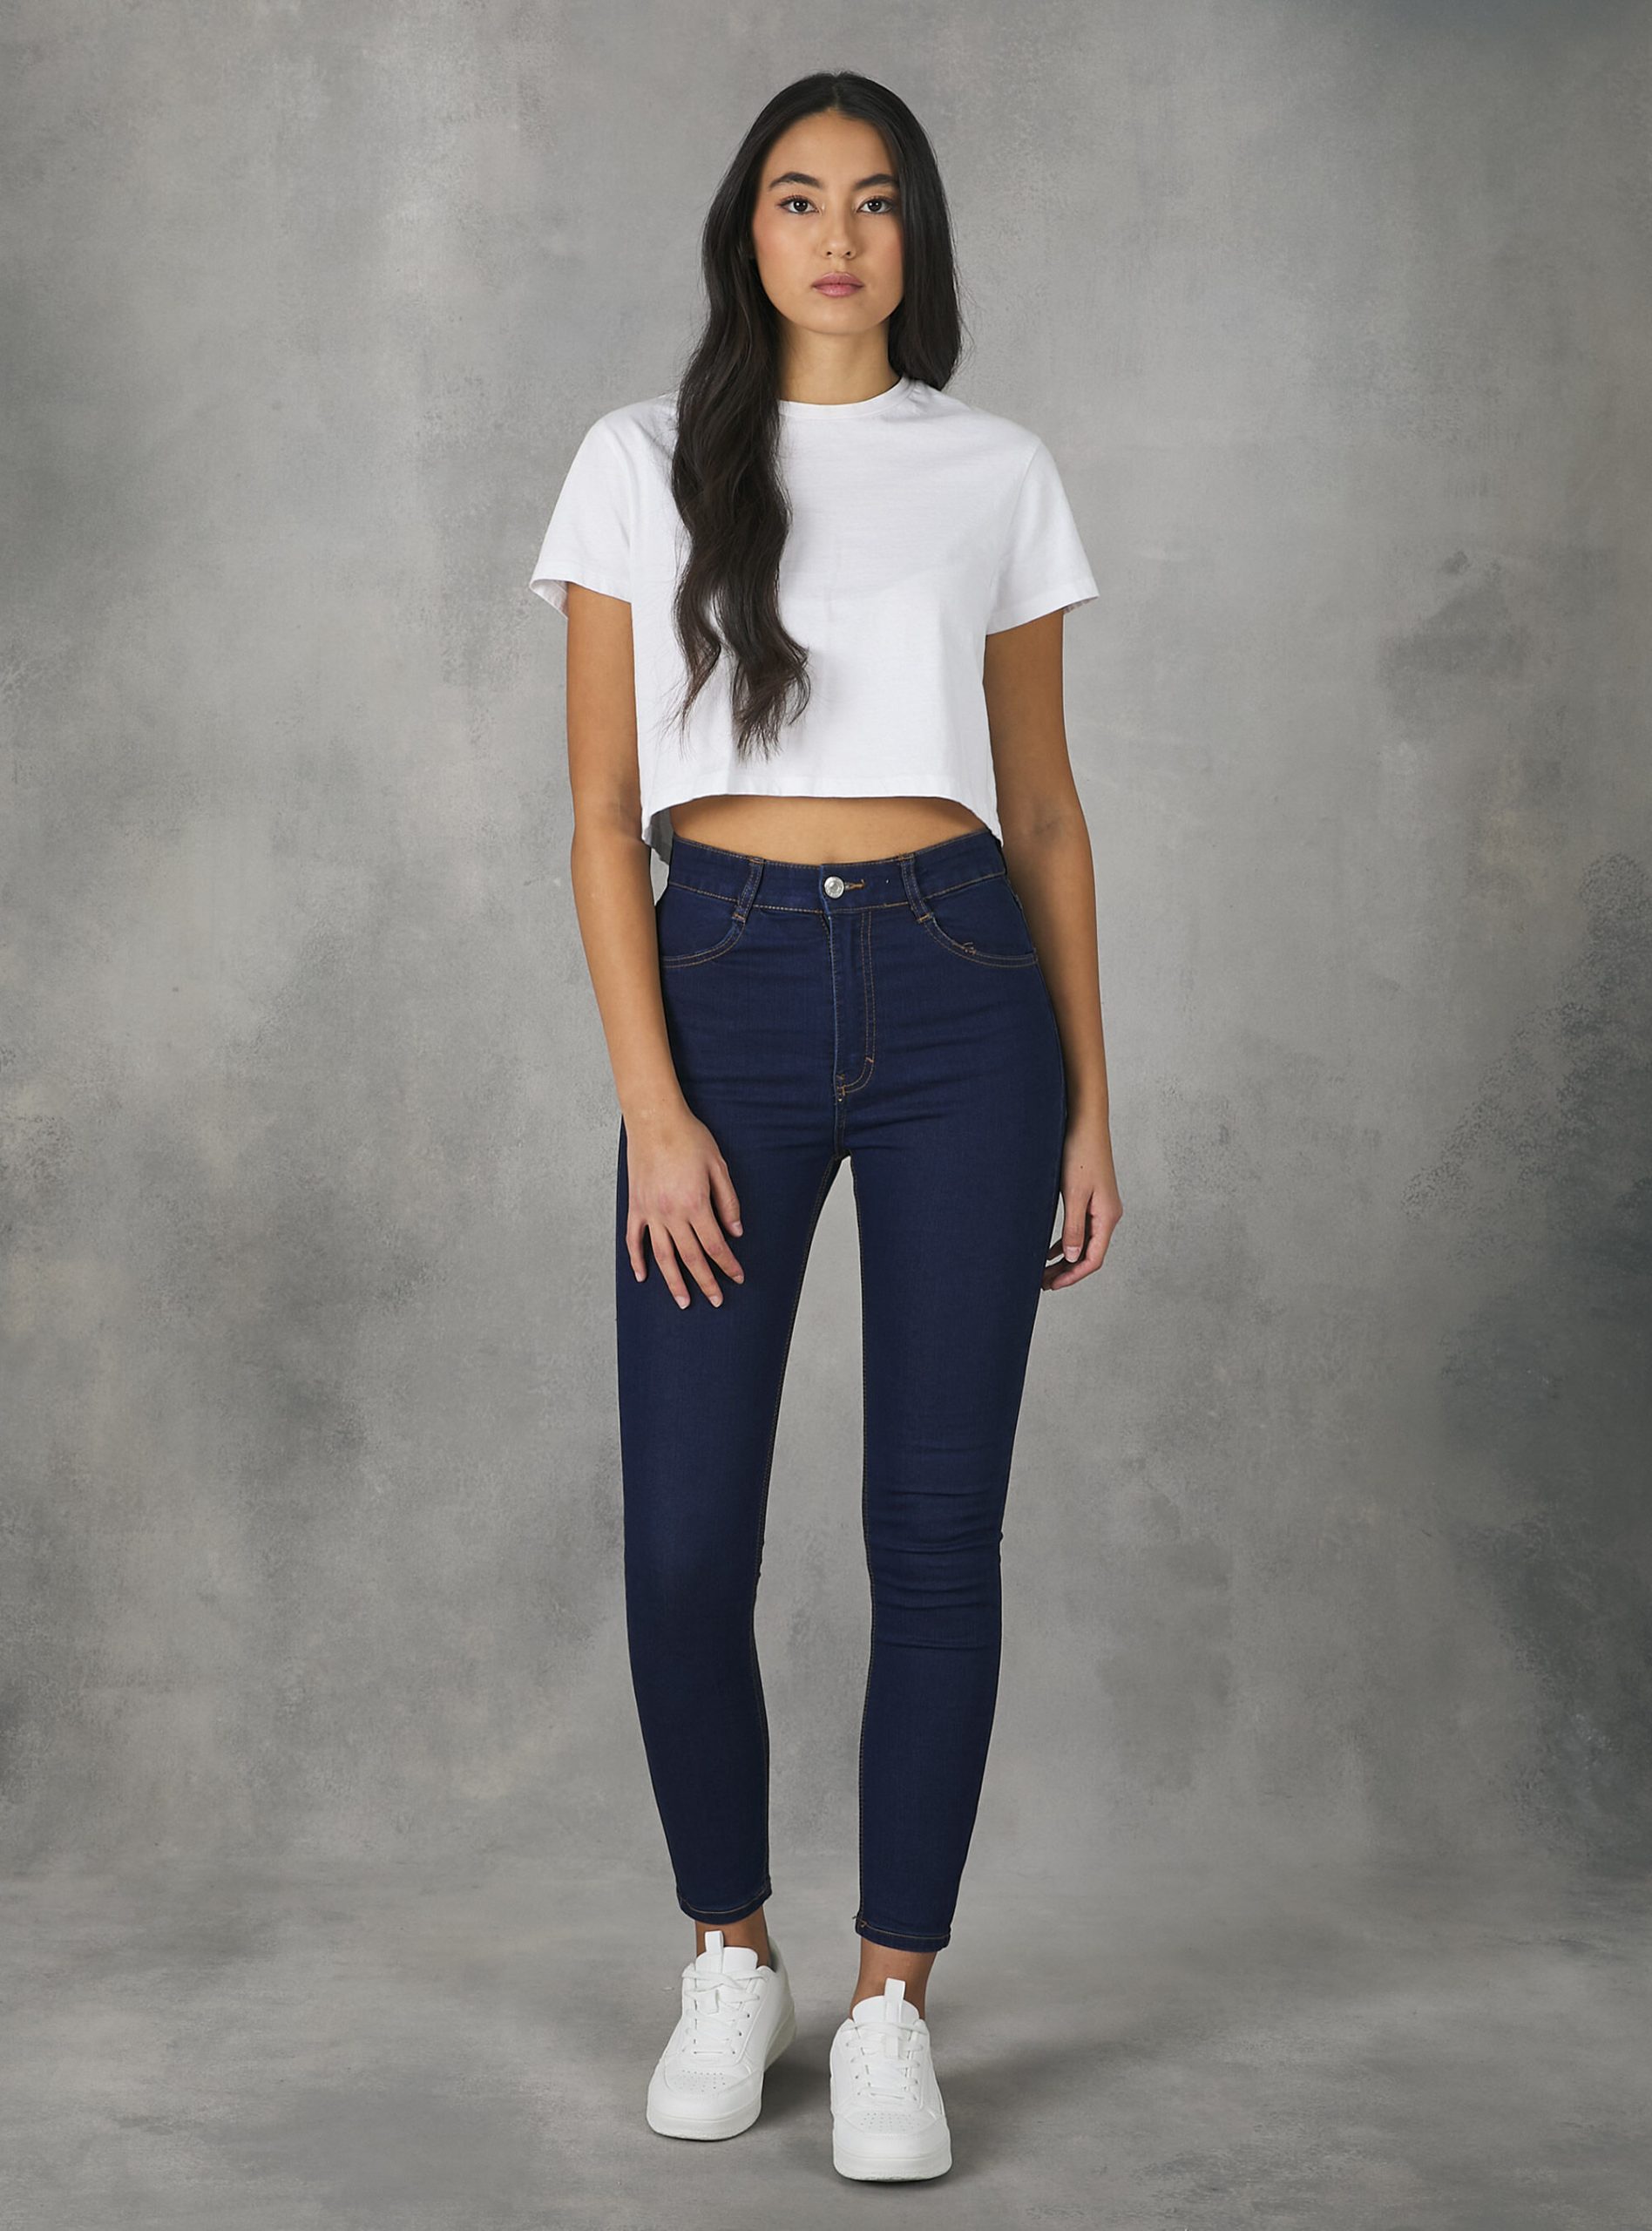 Jeans D002 Medium Dark Blue Frauen Alcott Skinny Fit Jeans Mit Hoher Taille Reduzierter Preis – 1